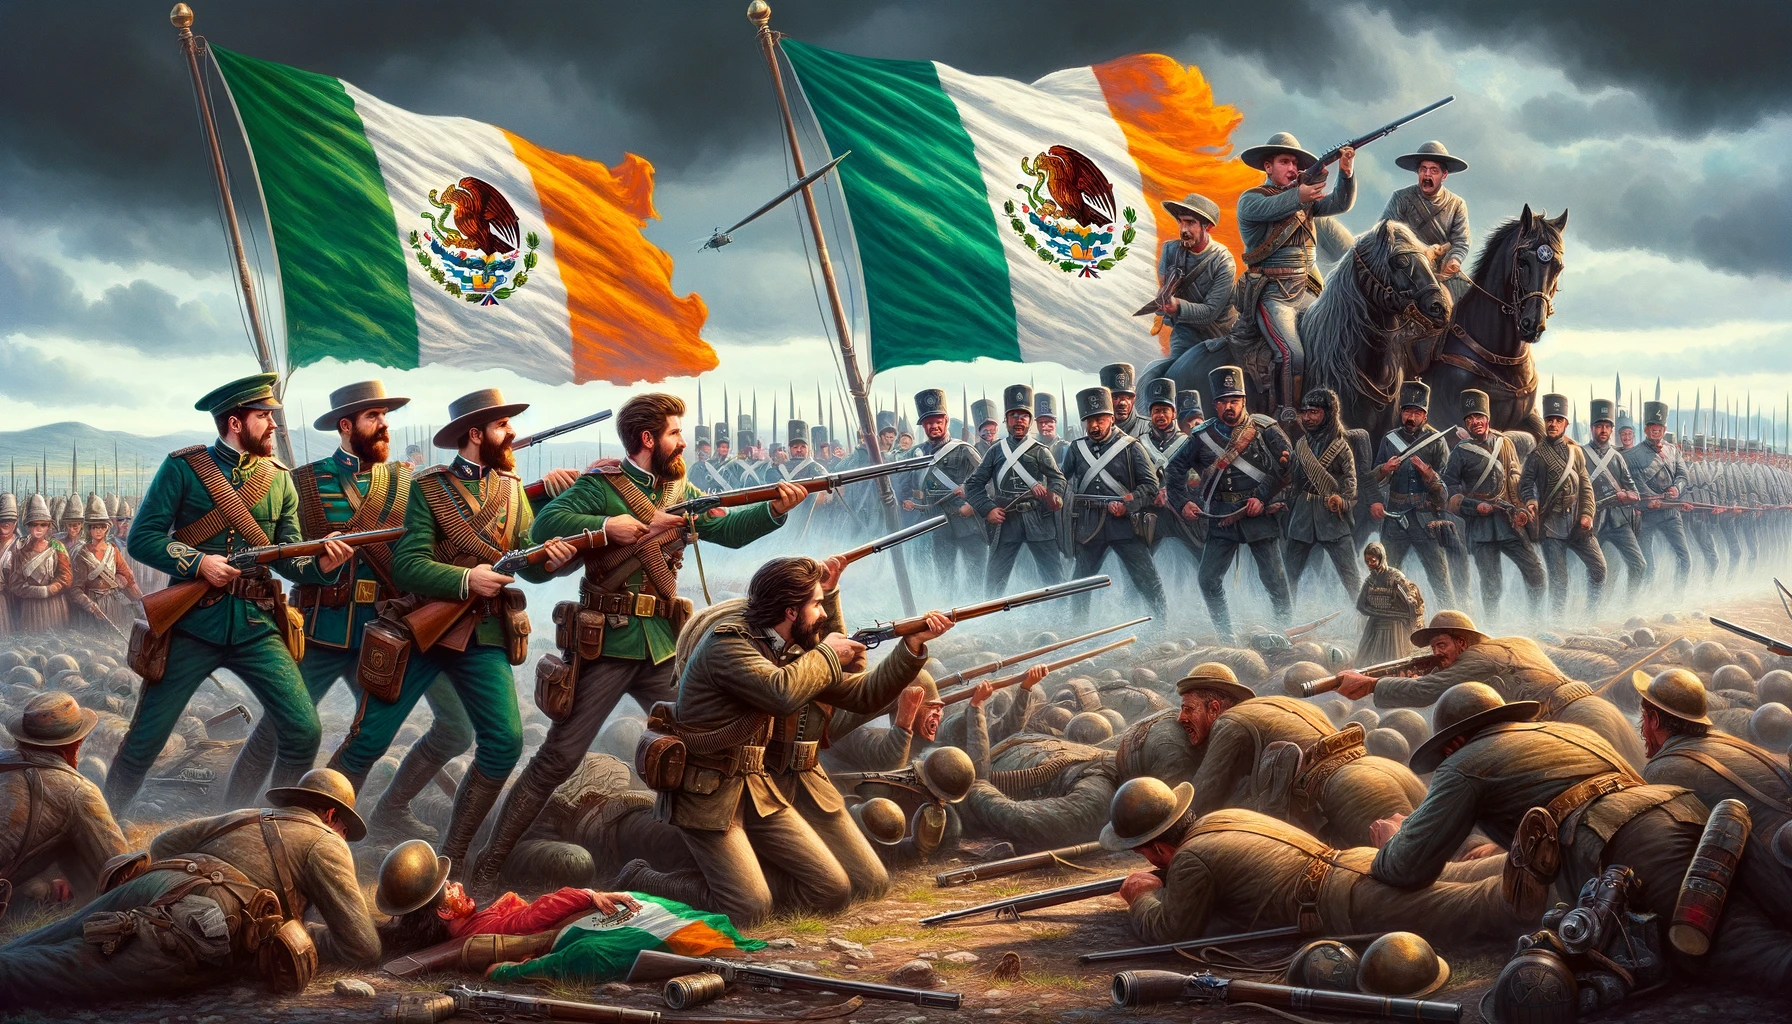 irlandeses que pelearon por mexico